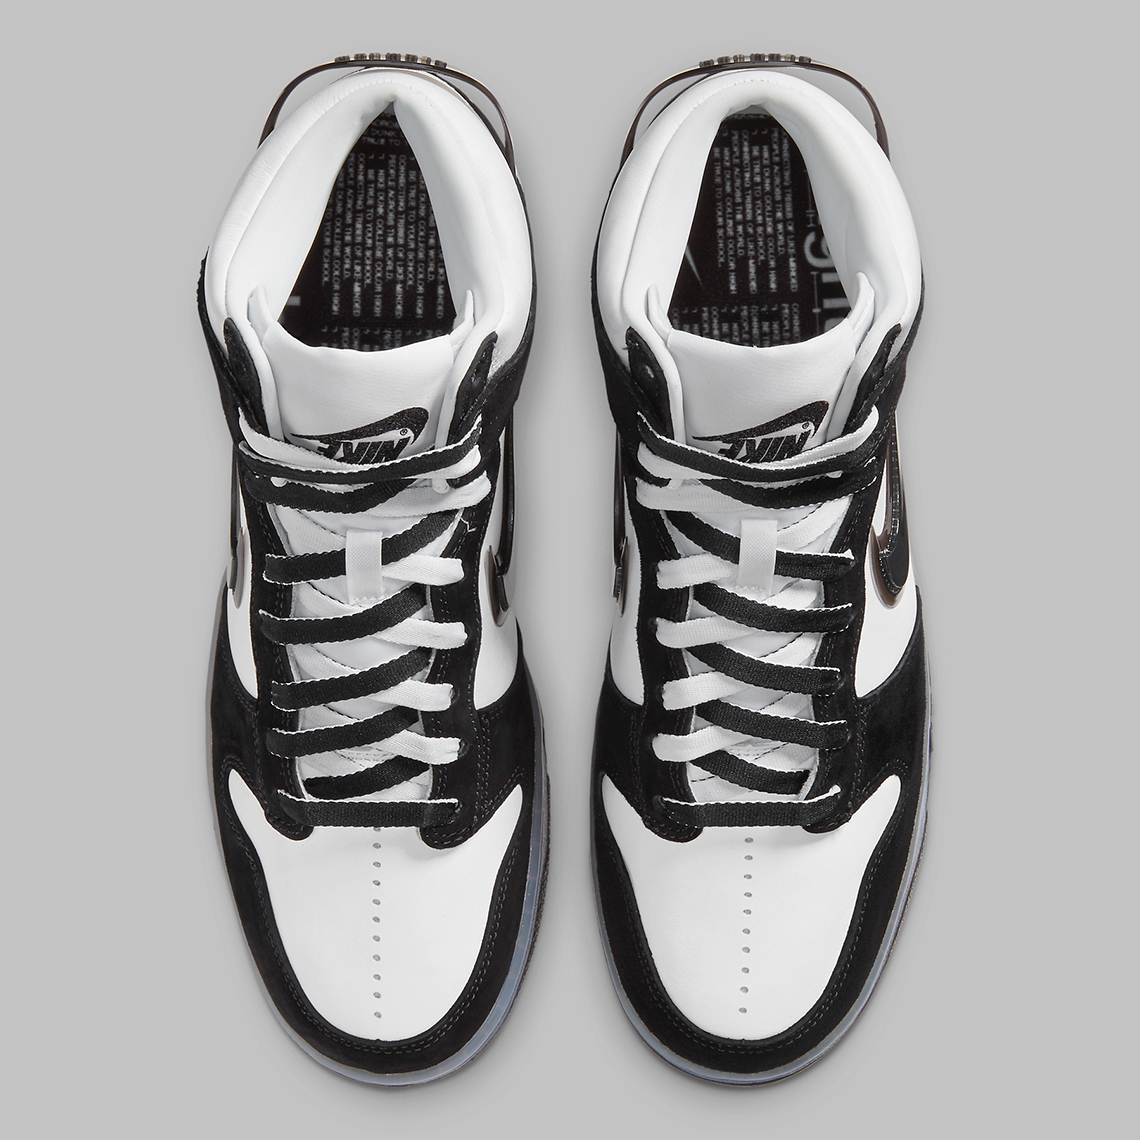 Slam Jam Nike Dunk High Black White DA1639-101 | SneakerNews.com